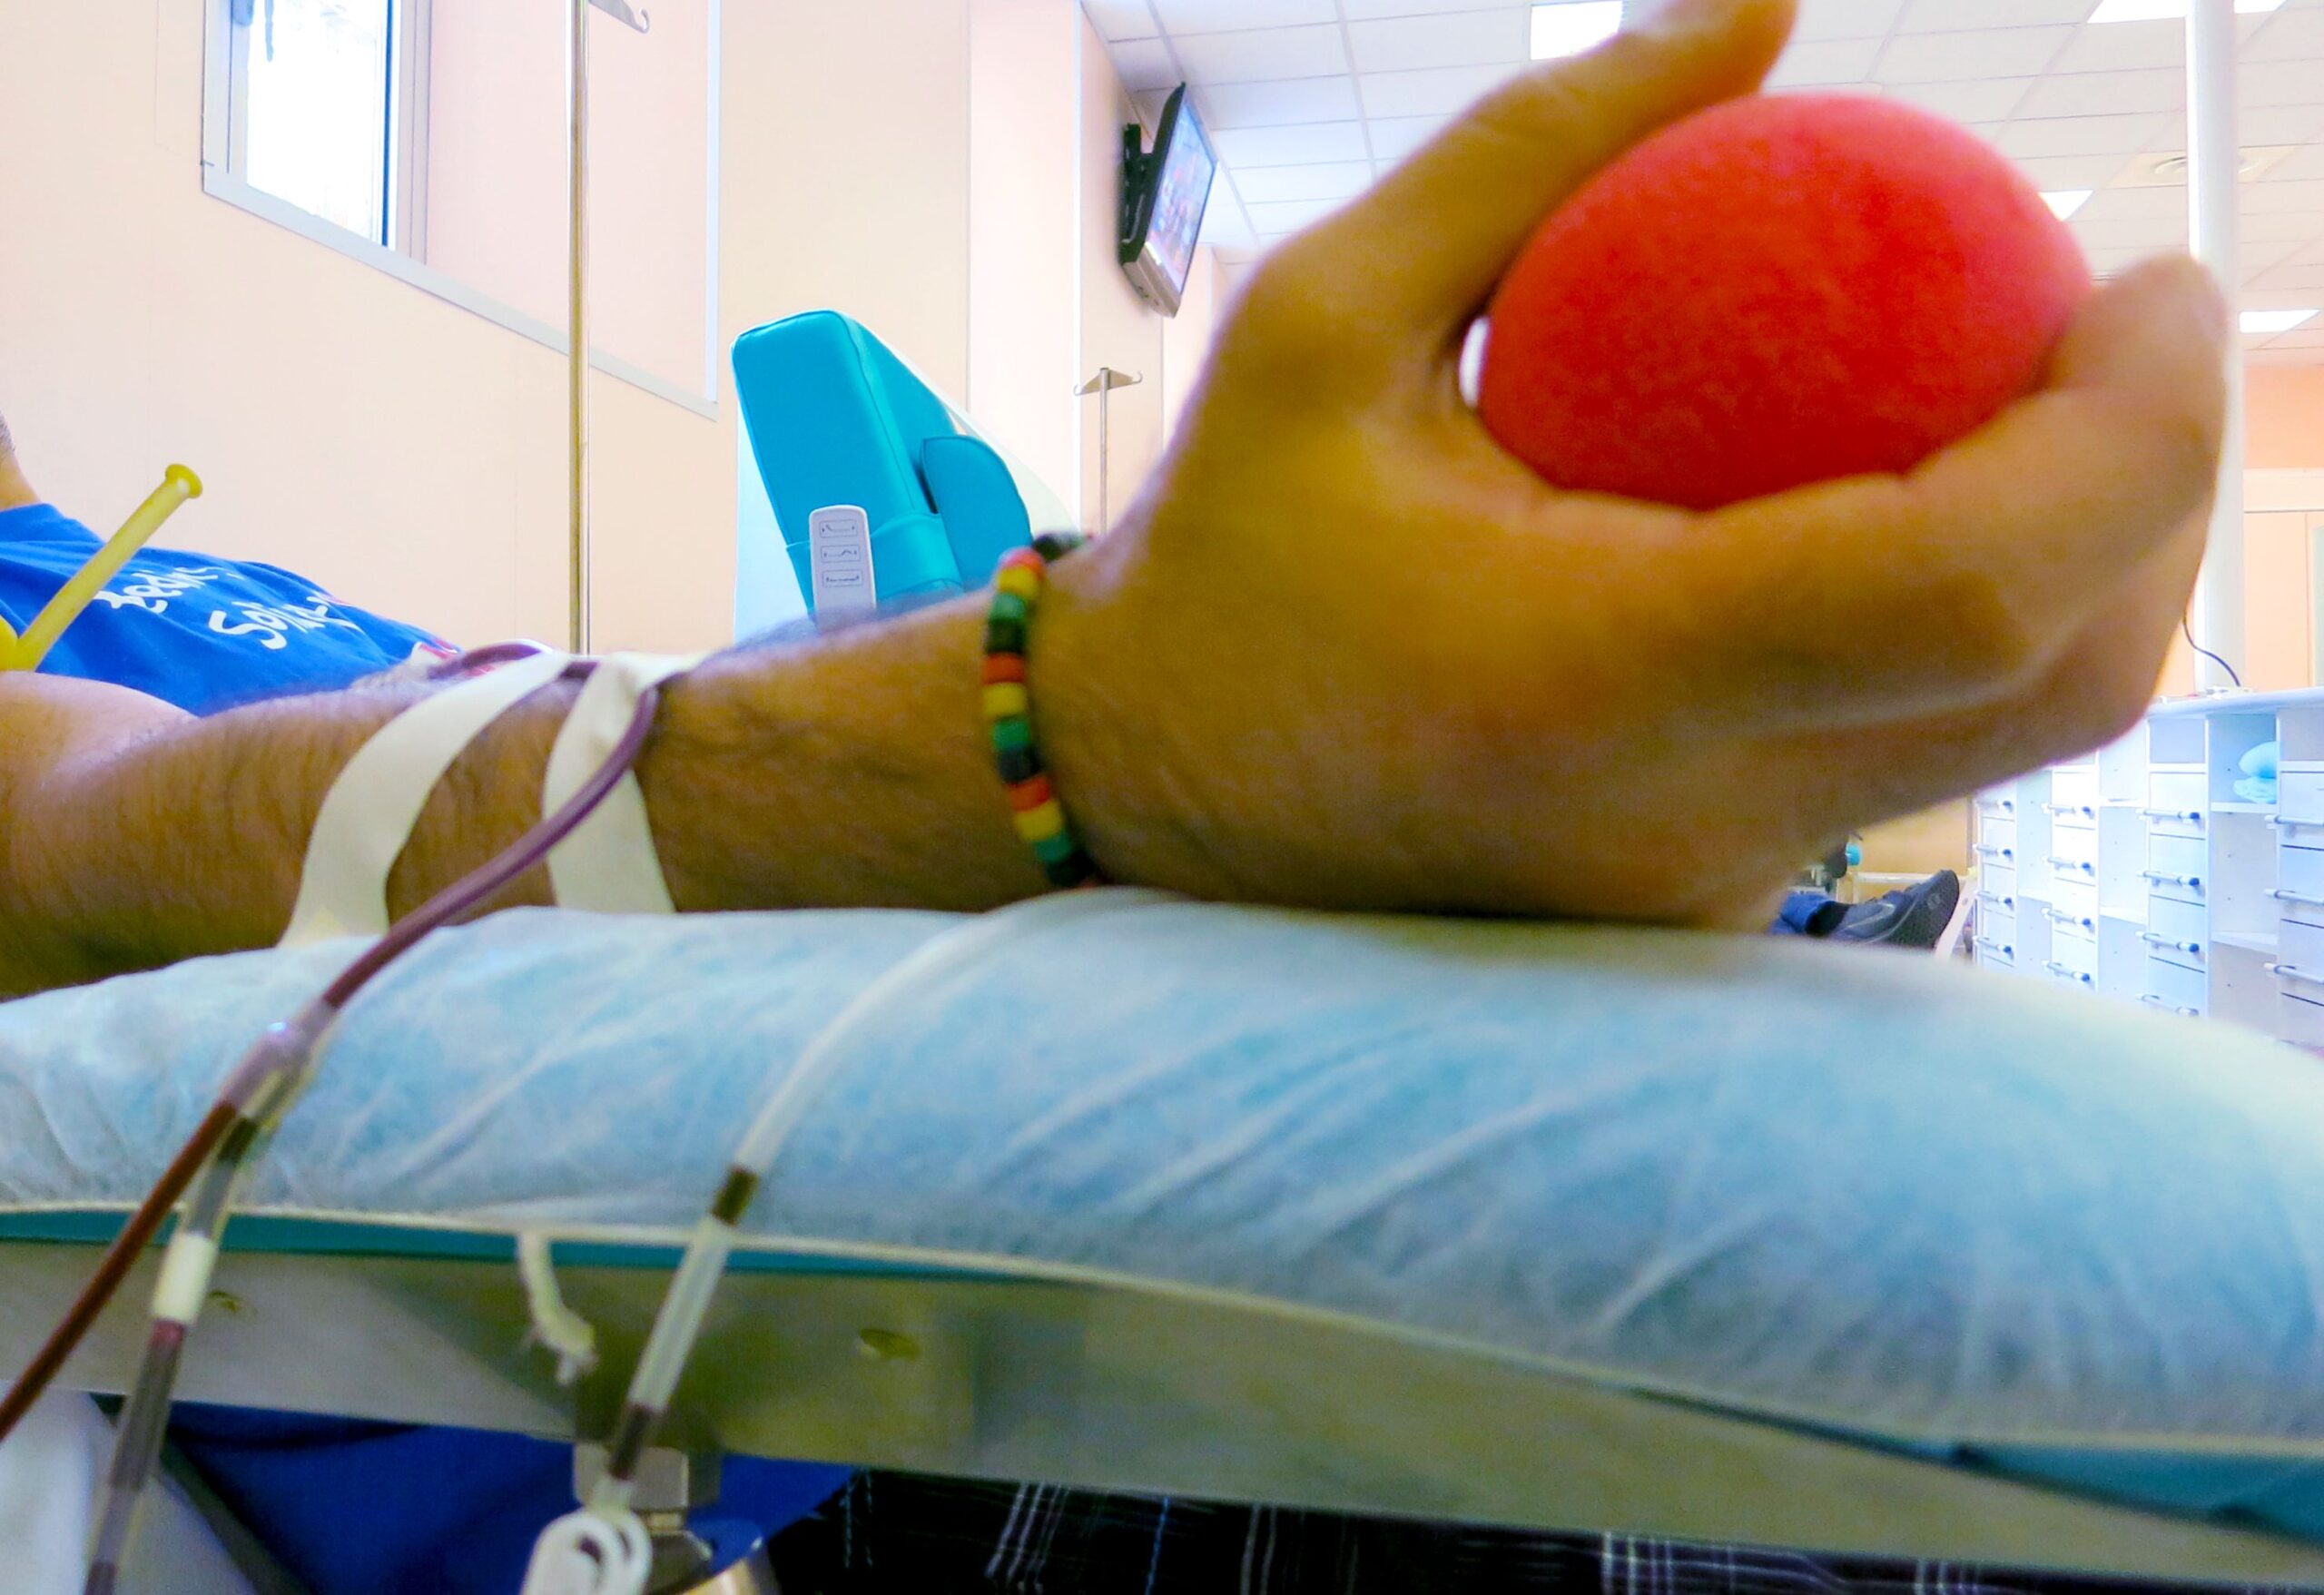 Trasfusione bimbo da no vax, presidente di Avis Toscana: “Così si mette a rischio il sistema”